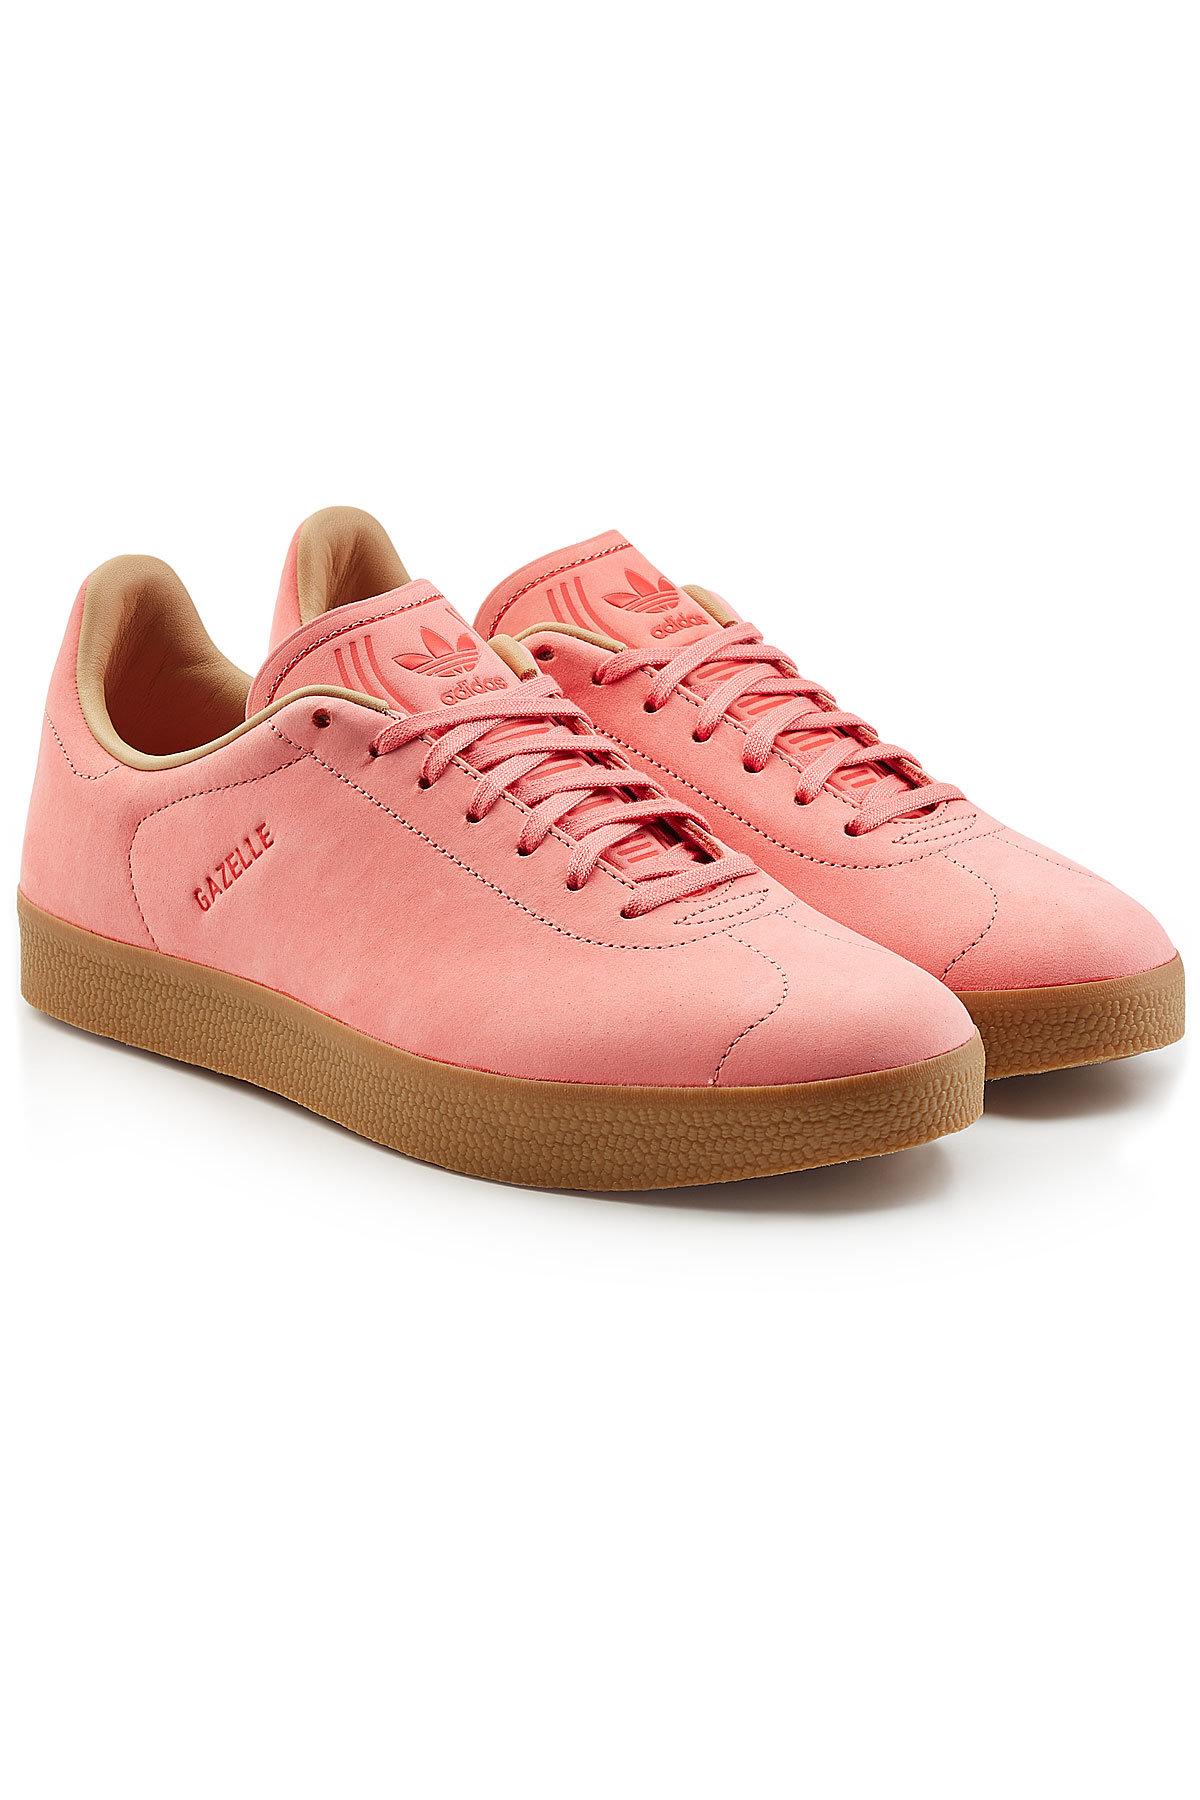 adidas gazelle dark pink